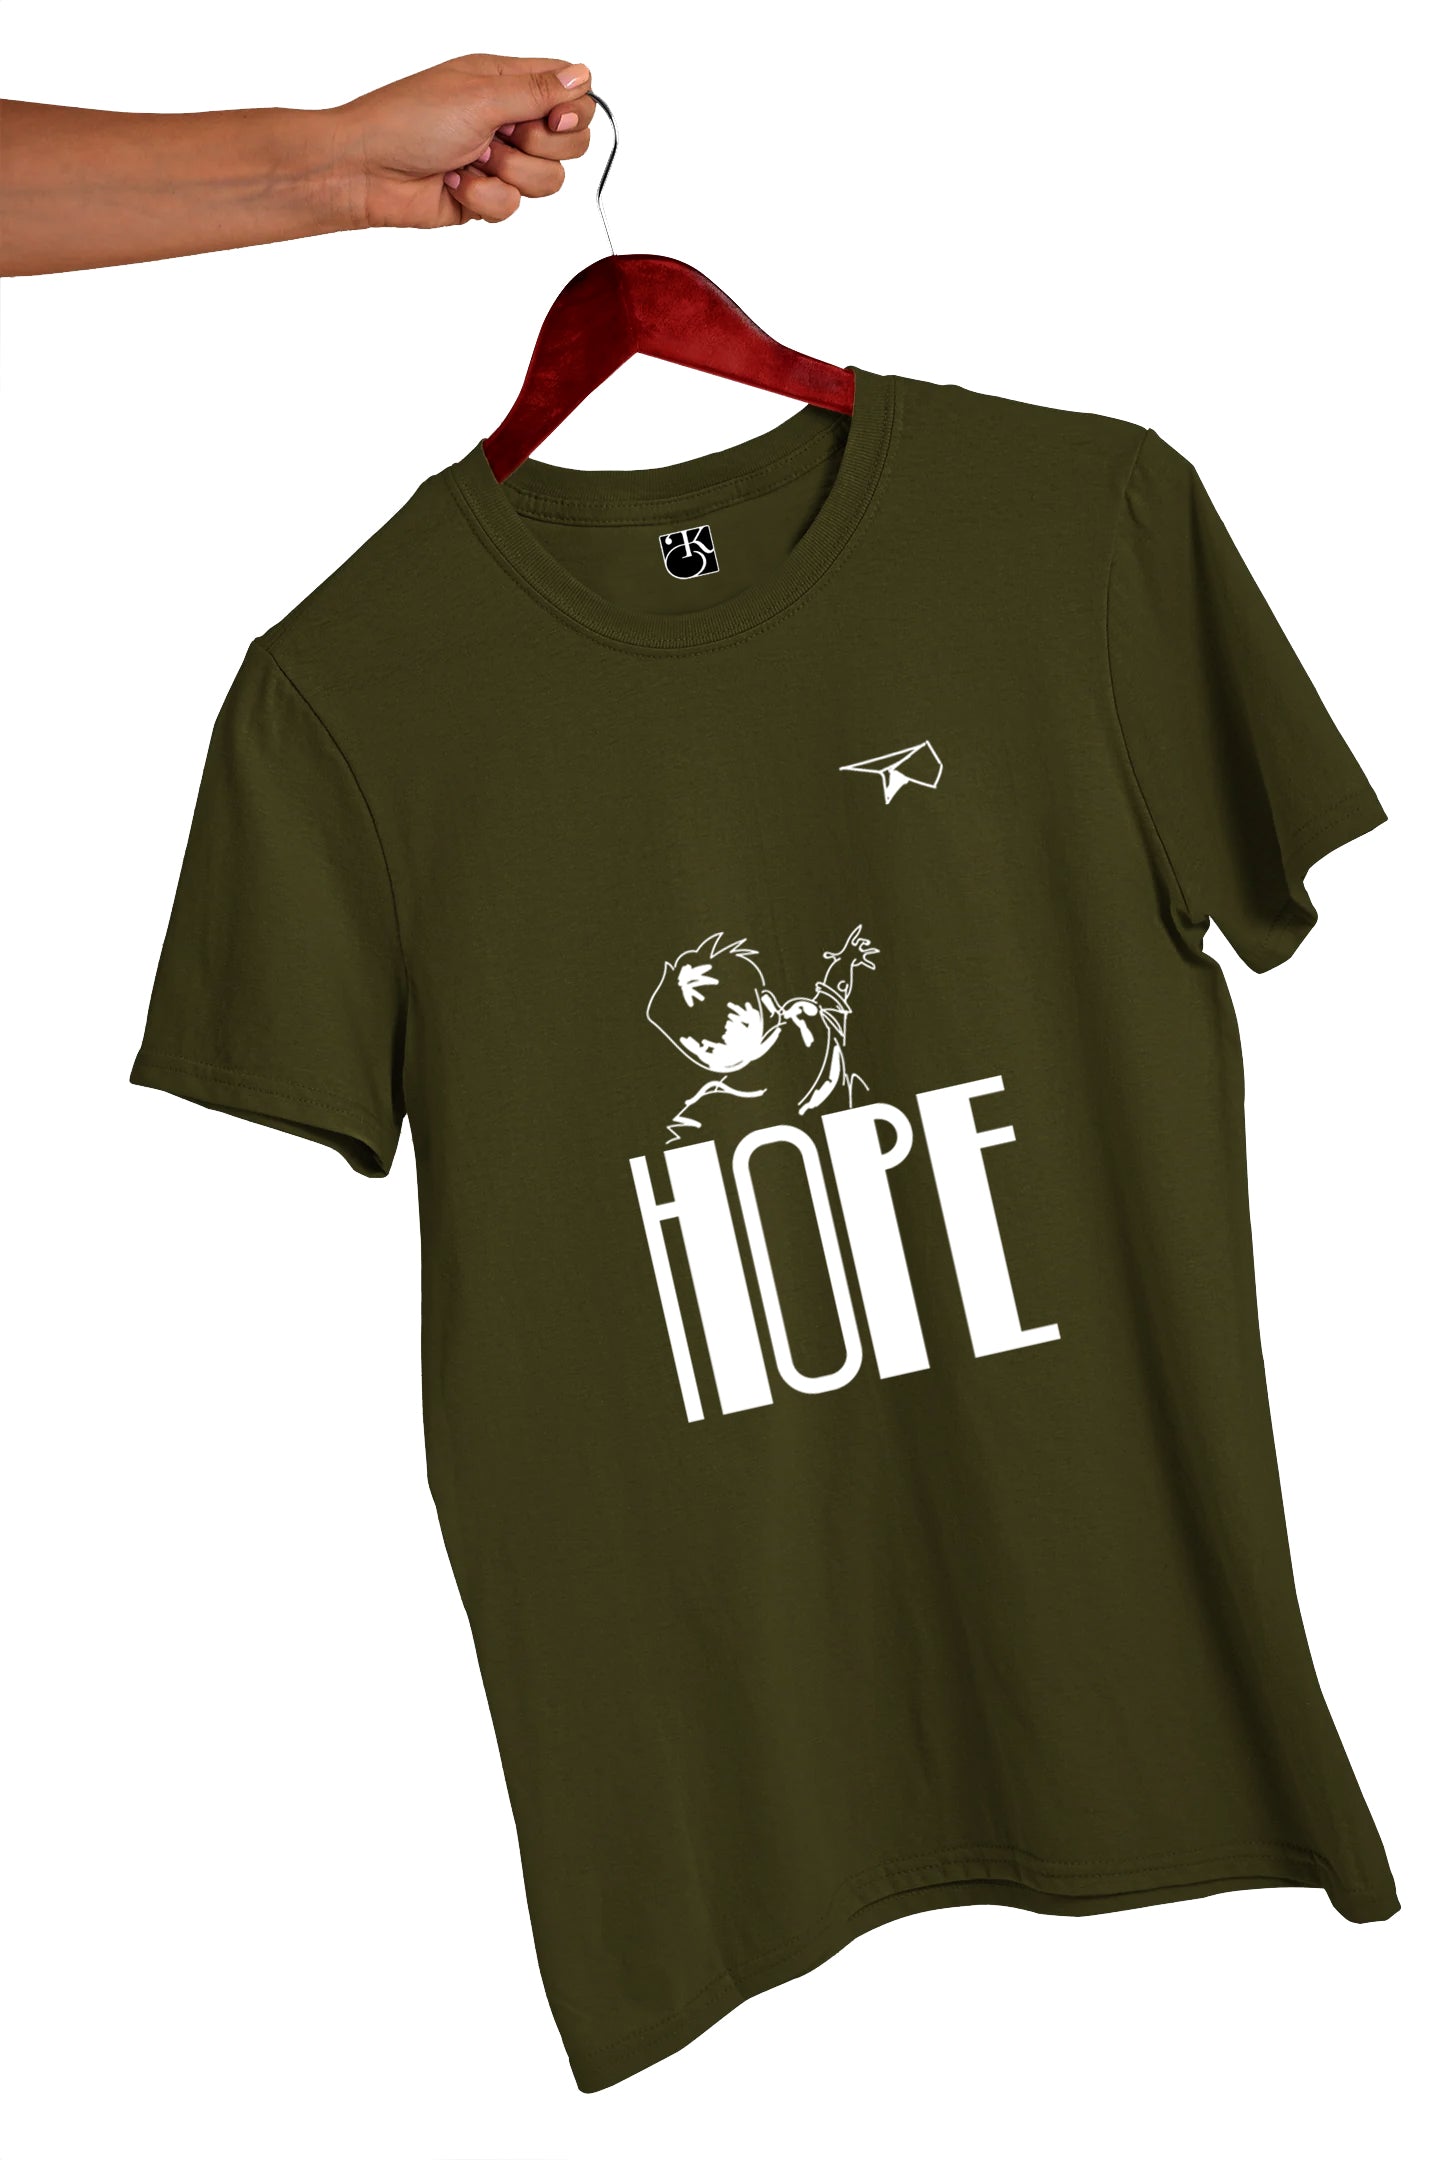 Hope T-Shirt By Kotha